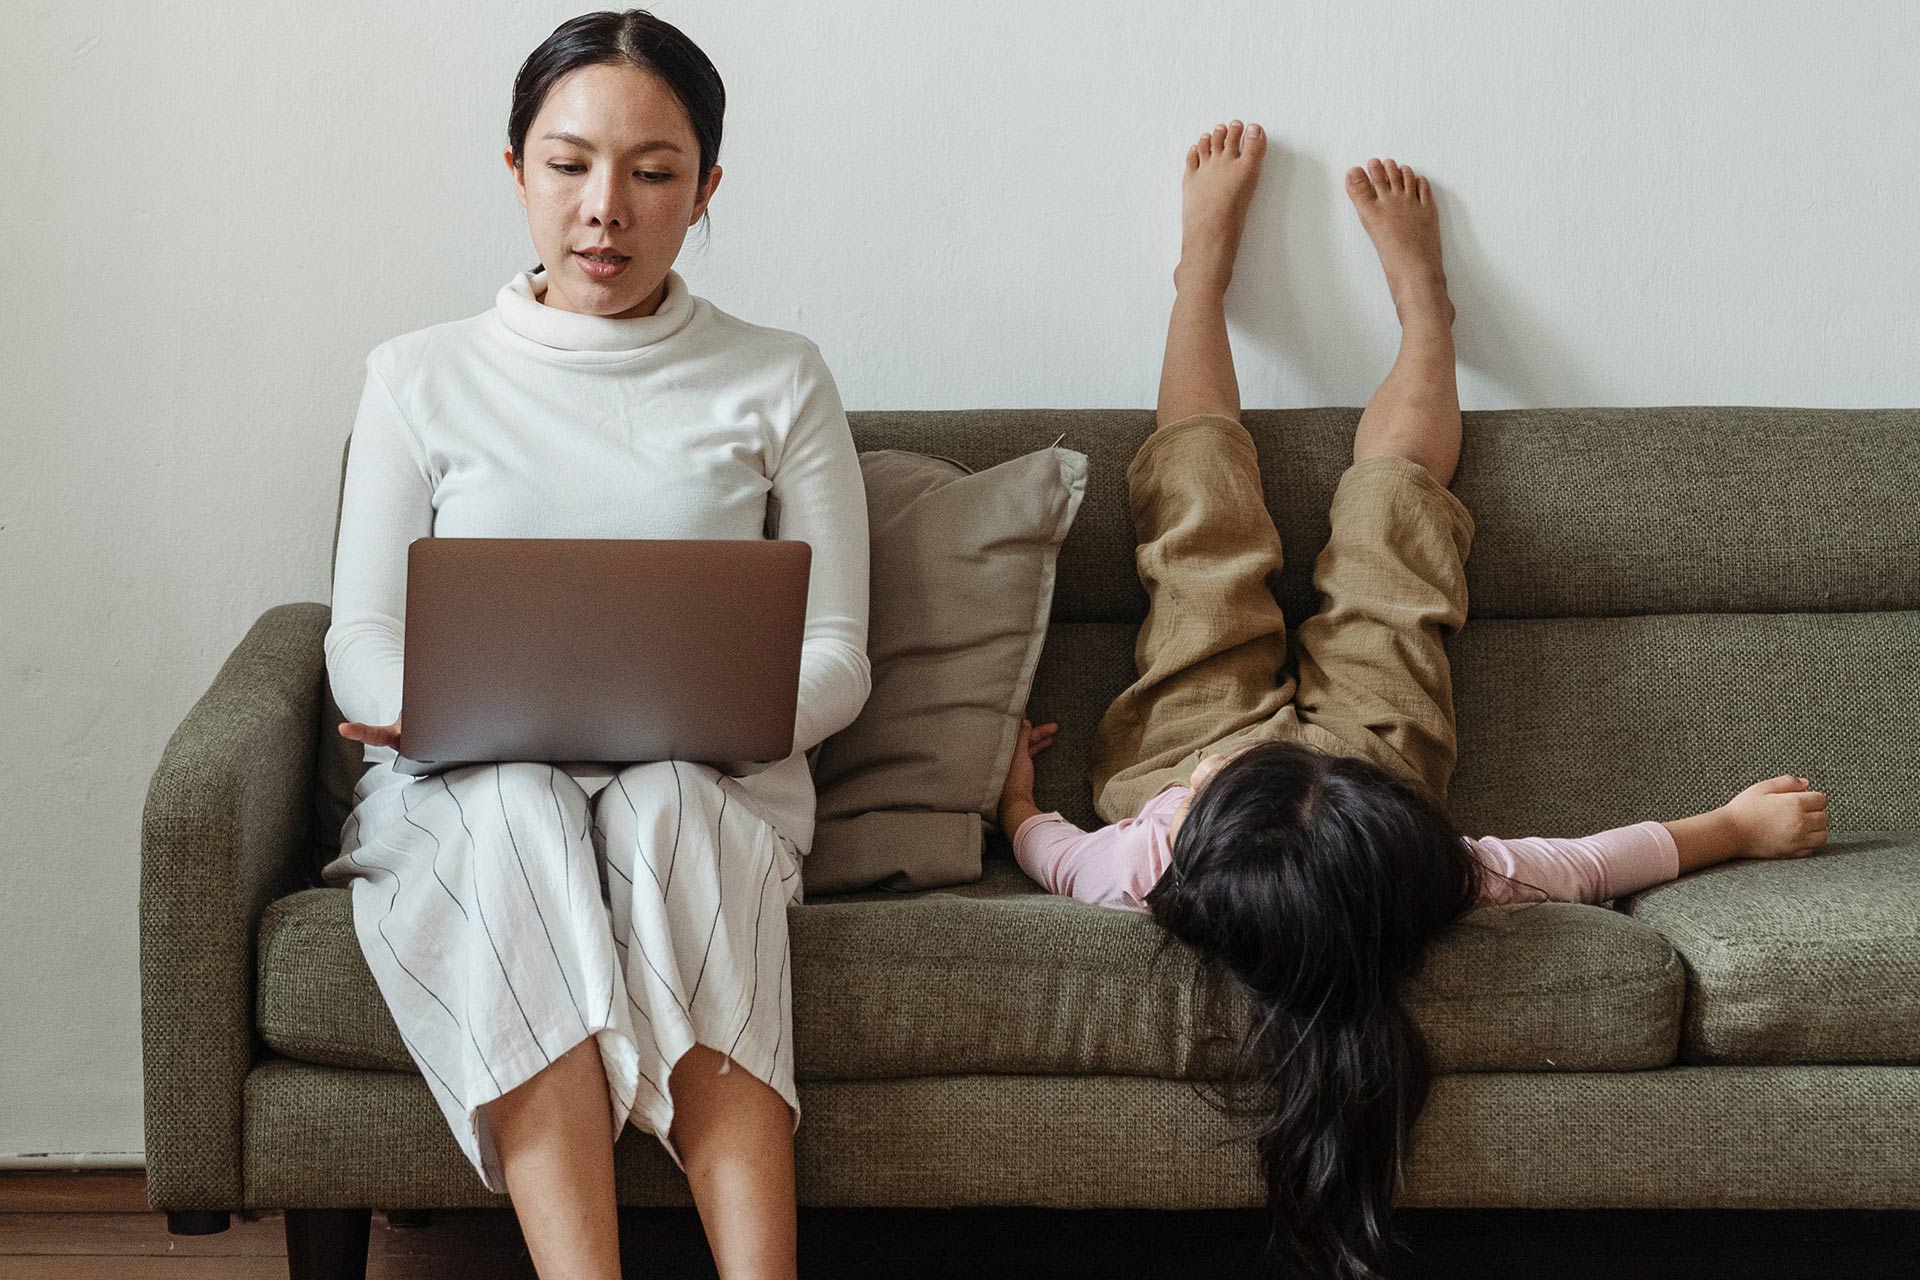 Een persoon die vanuit huis op een laptop werkt met een kind